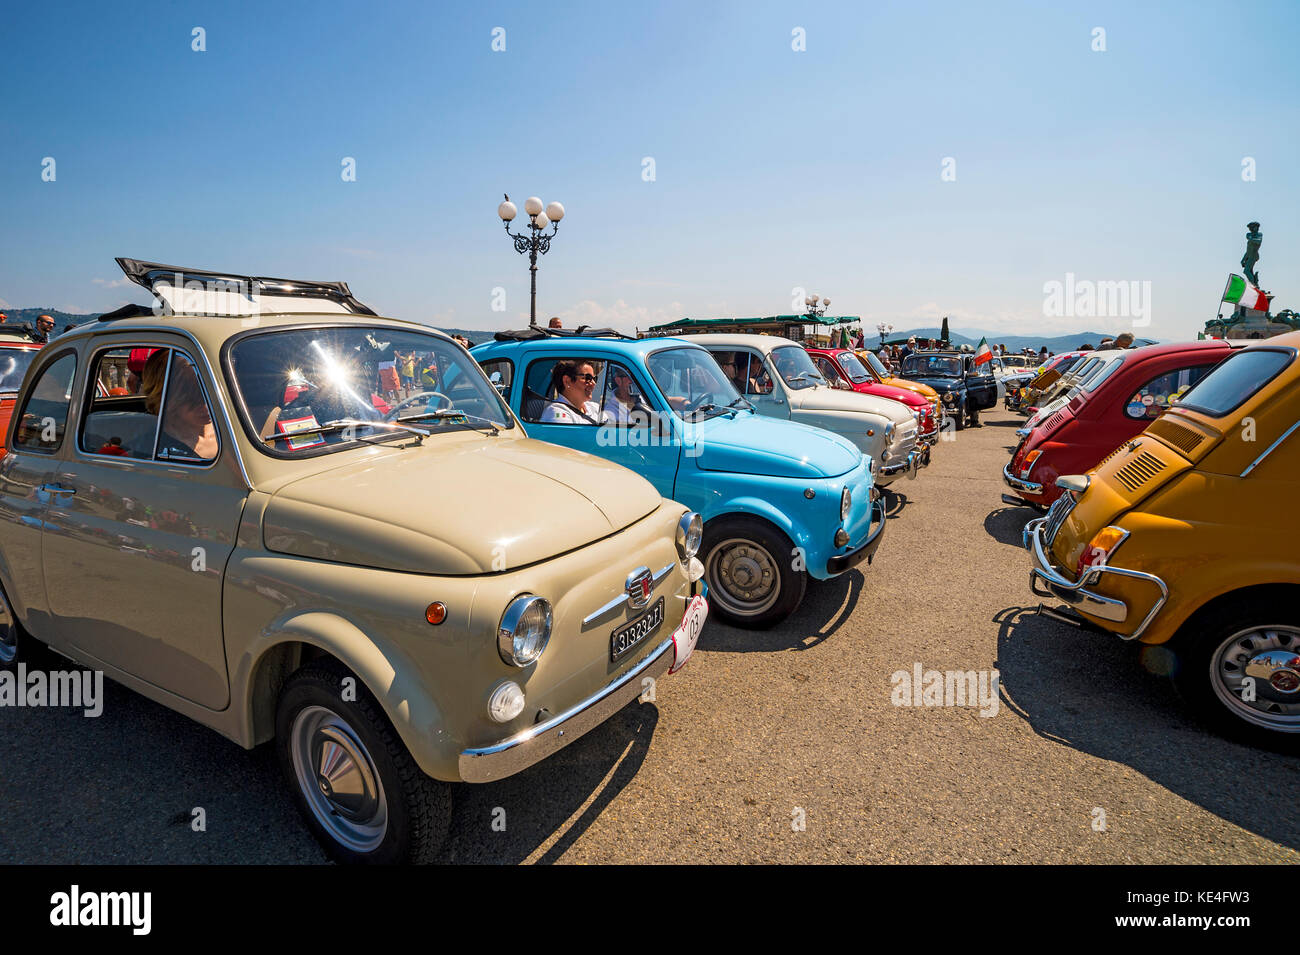 Europa, Italien, Toskana, Italien, Fiat 500, altes Auto, Oldtimer, Abarth, Farben, Rallye Stockfoto